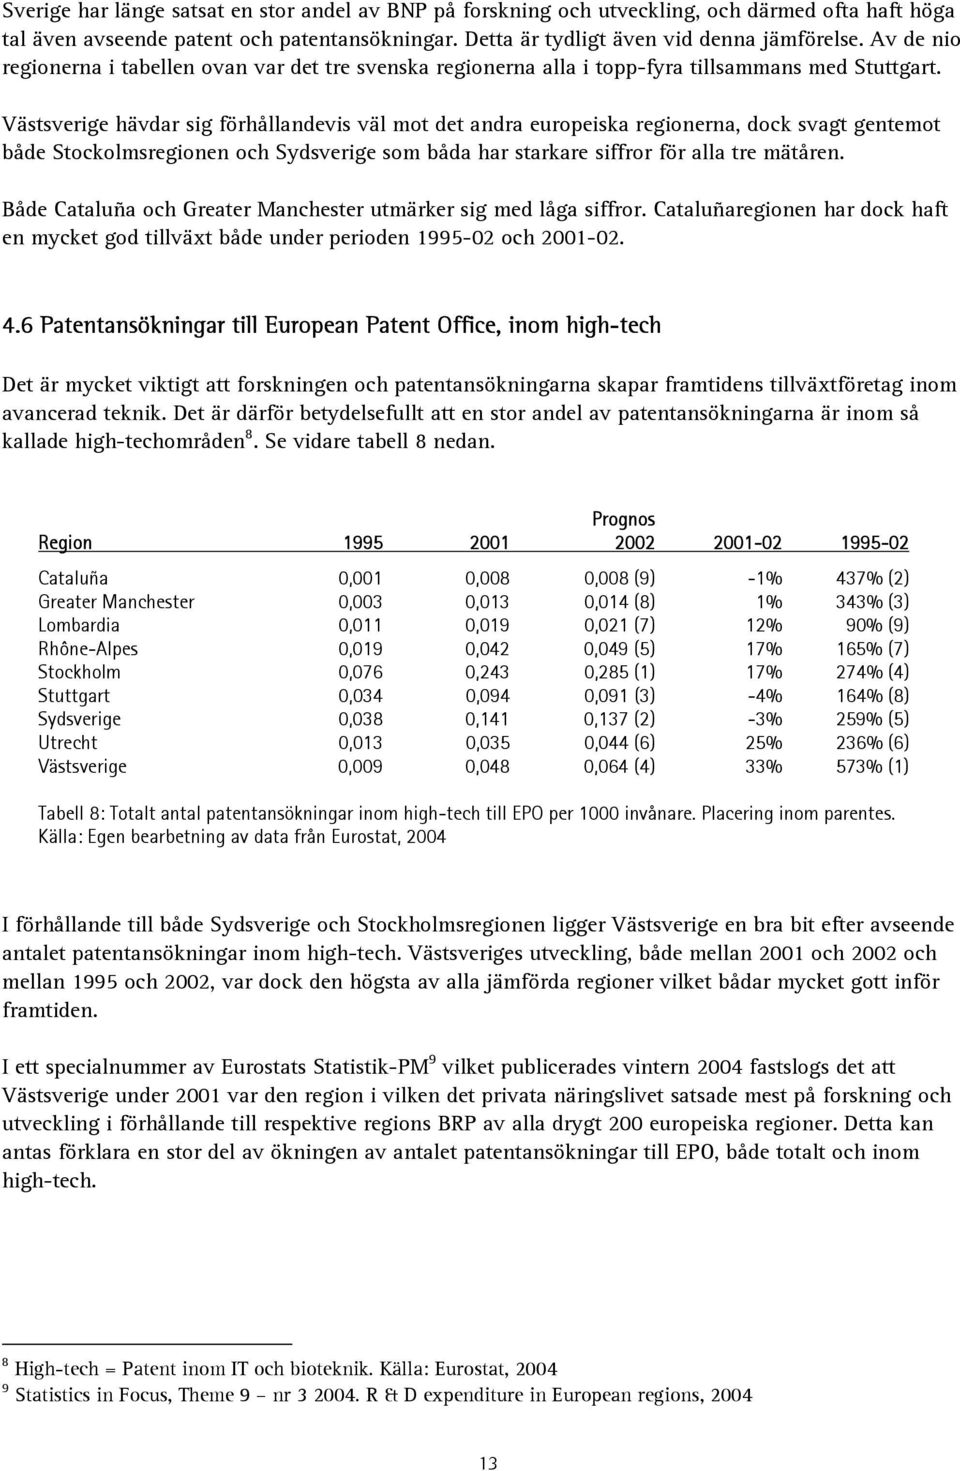 Västsverige hävdar sig förhållandevis väl mot det andra europeiska regionerna, dock svagt gentemot både Stockolmsregionen och Sydsverige som båda har starkare siffror för alla tre mätåren.